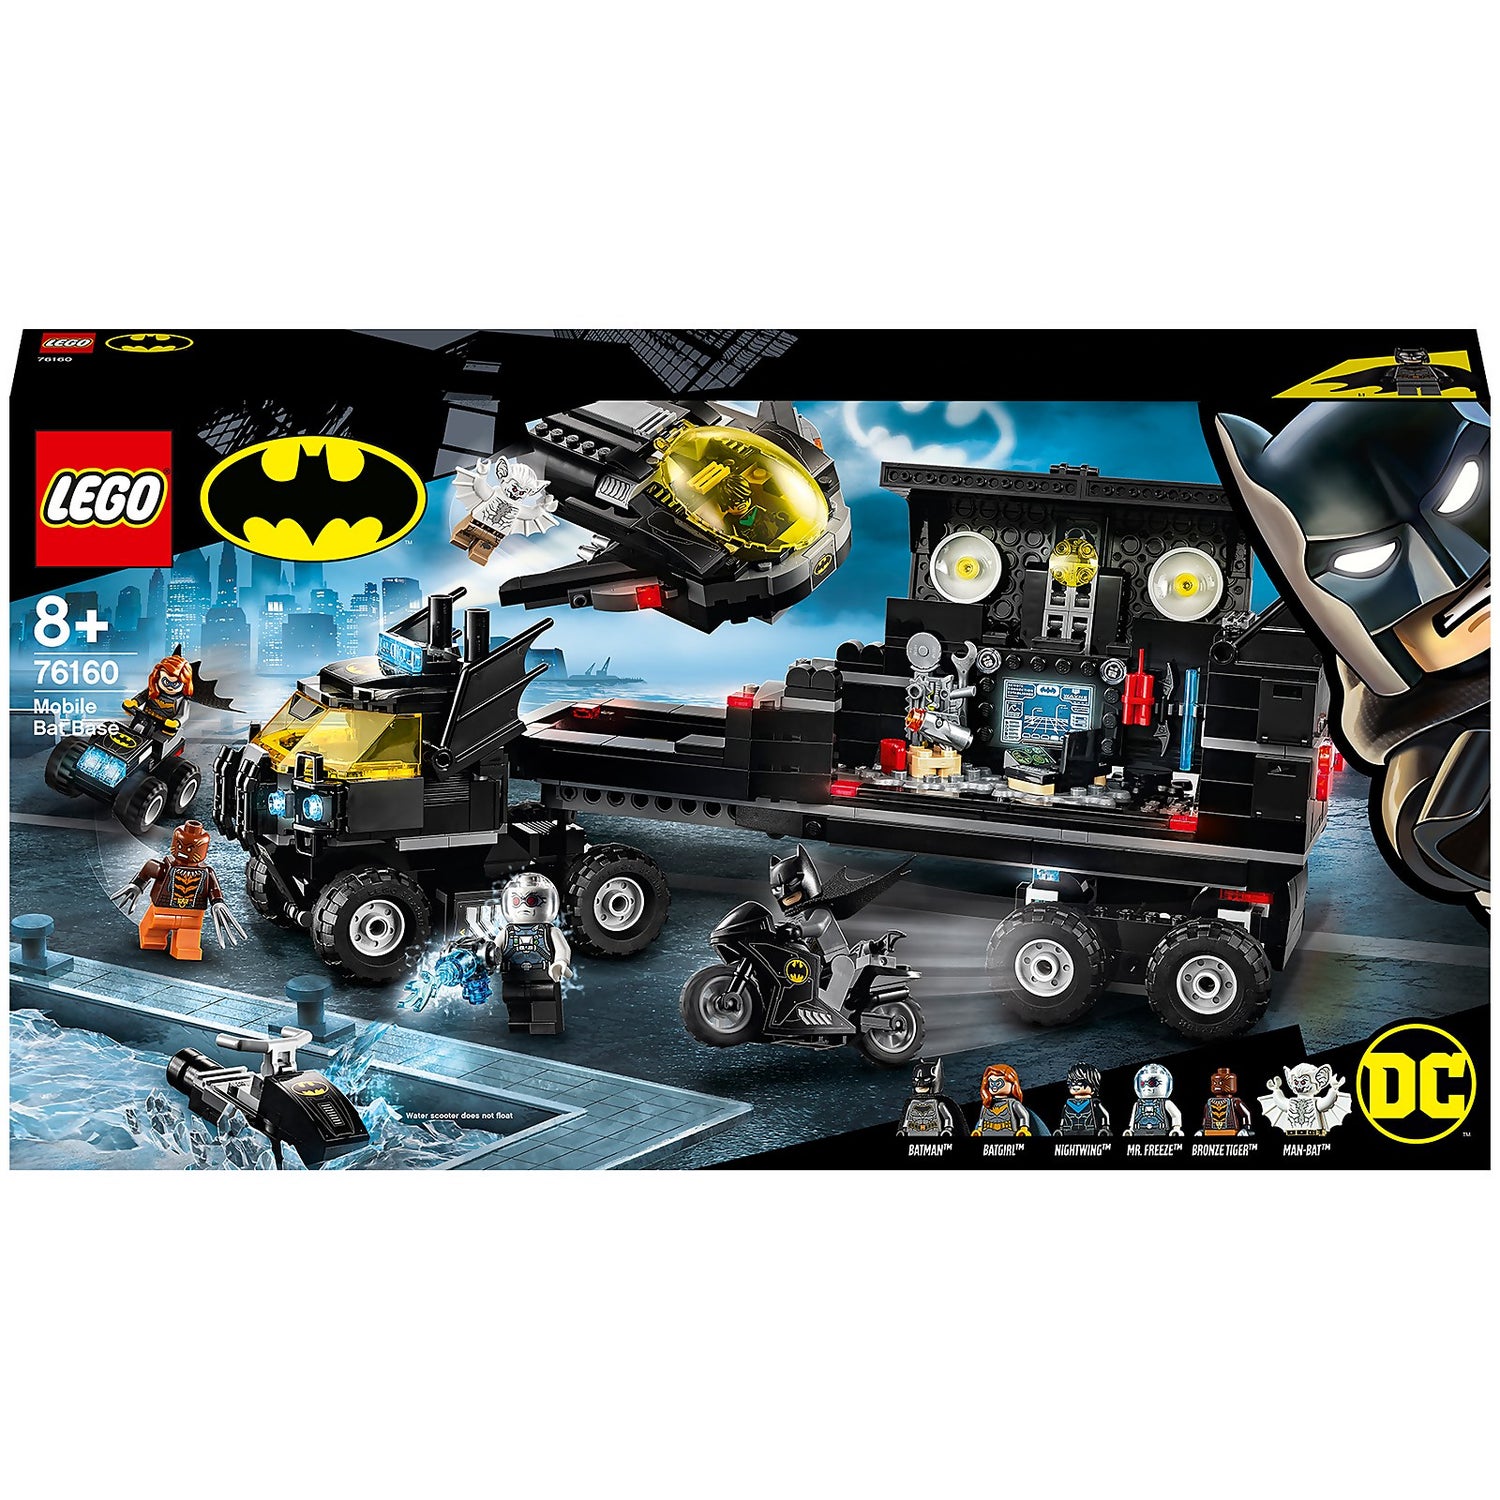 LEGO DC Batman Mobile Bat Base Batcave Truck Toy (76160) Toys - Zavvi US